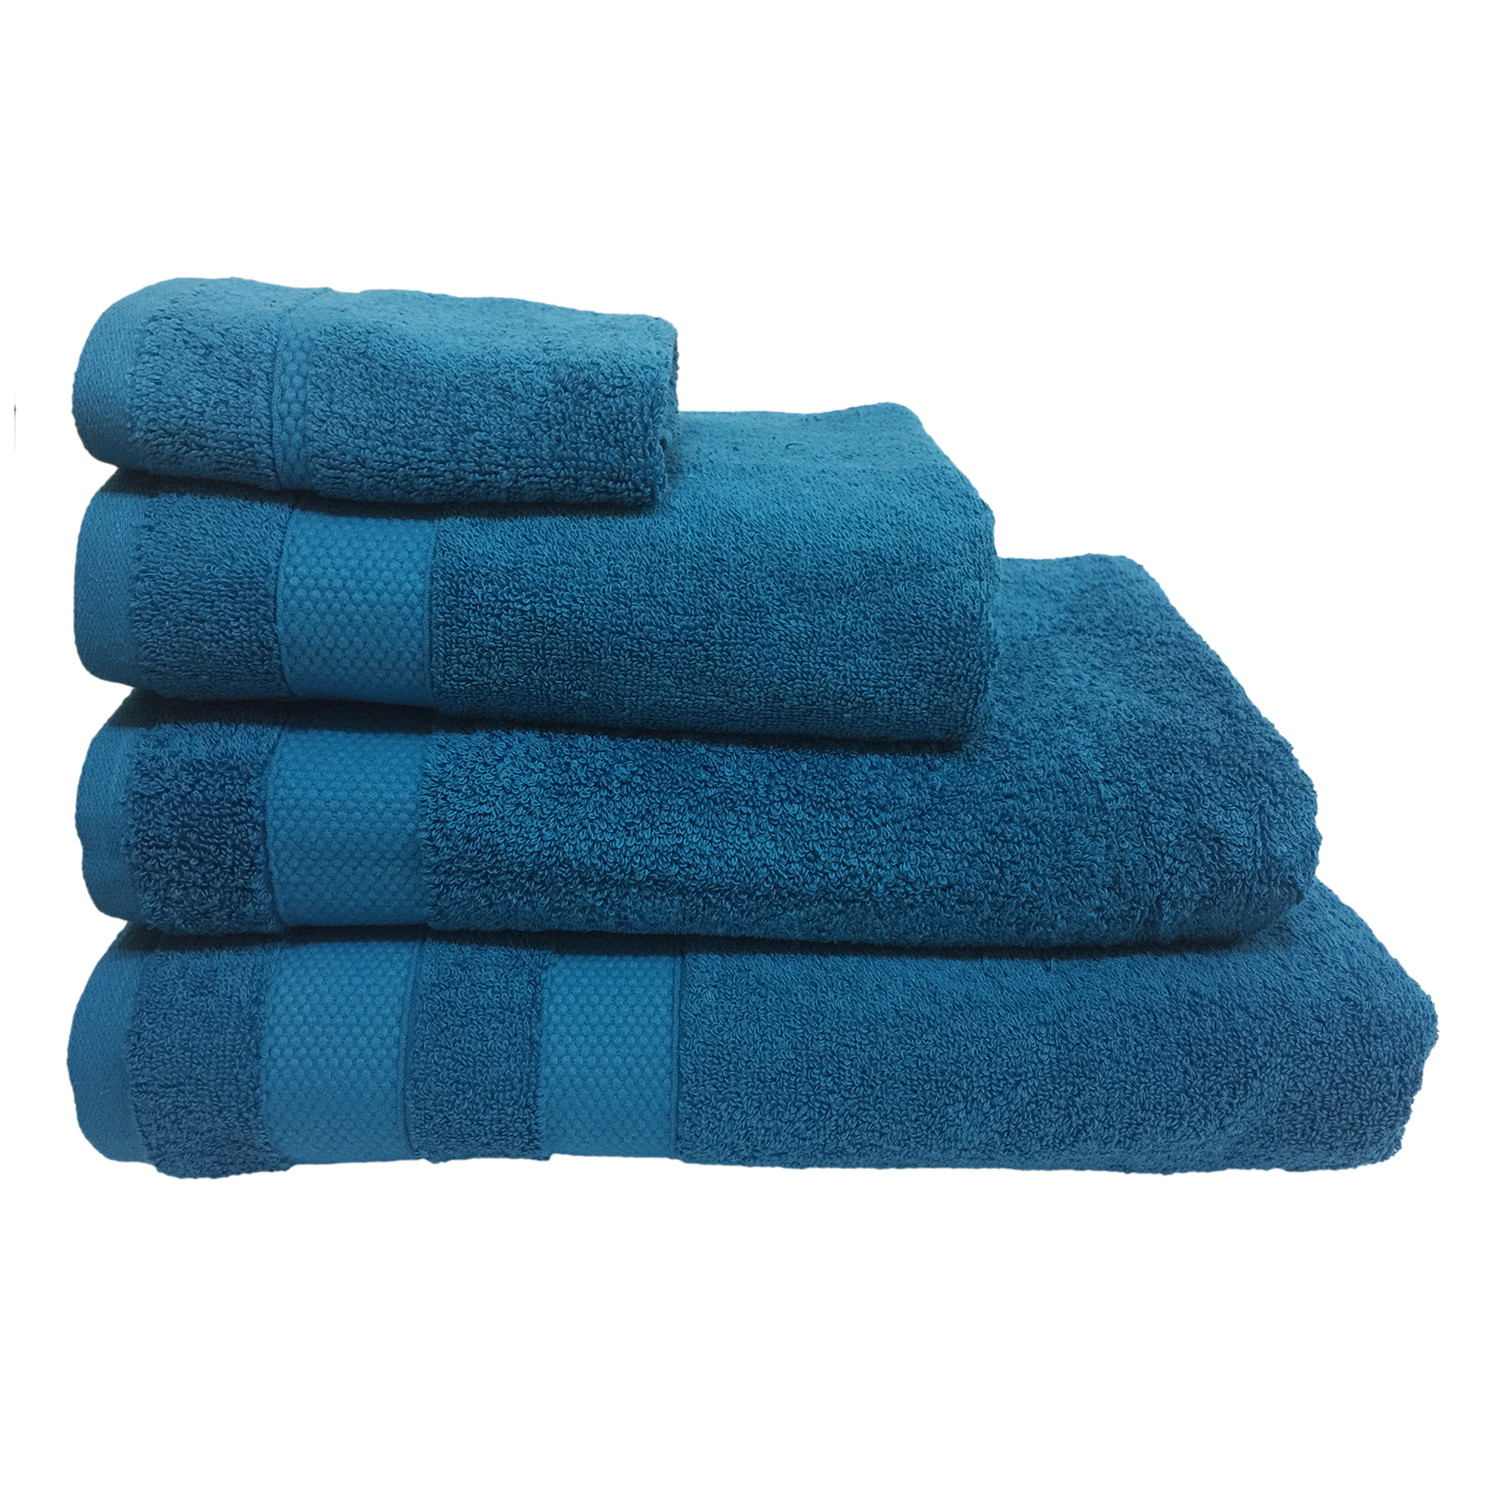 Divante Blue Egyptian Cotton Bath Towel Image